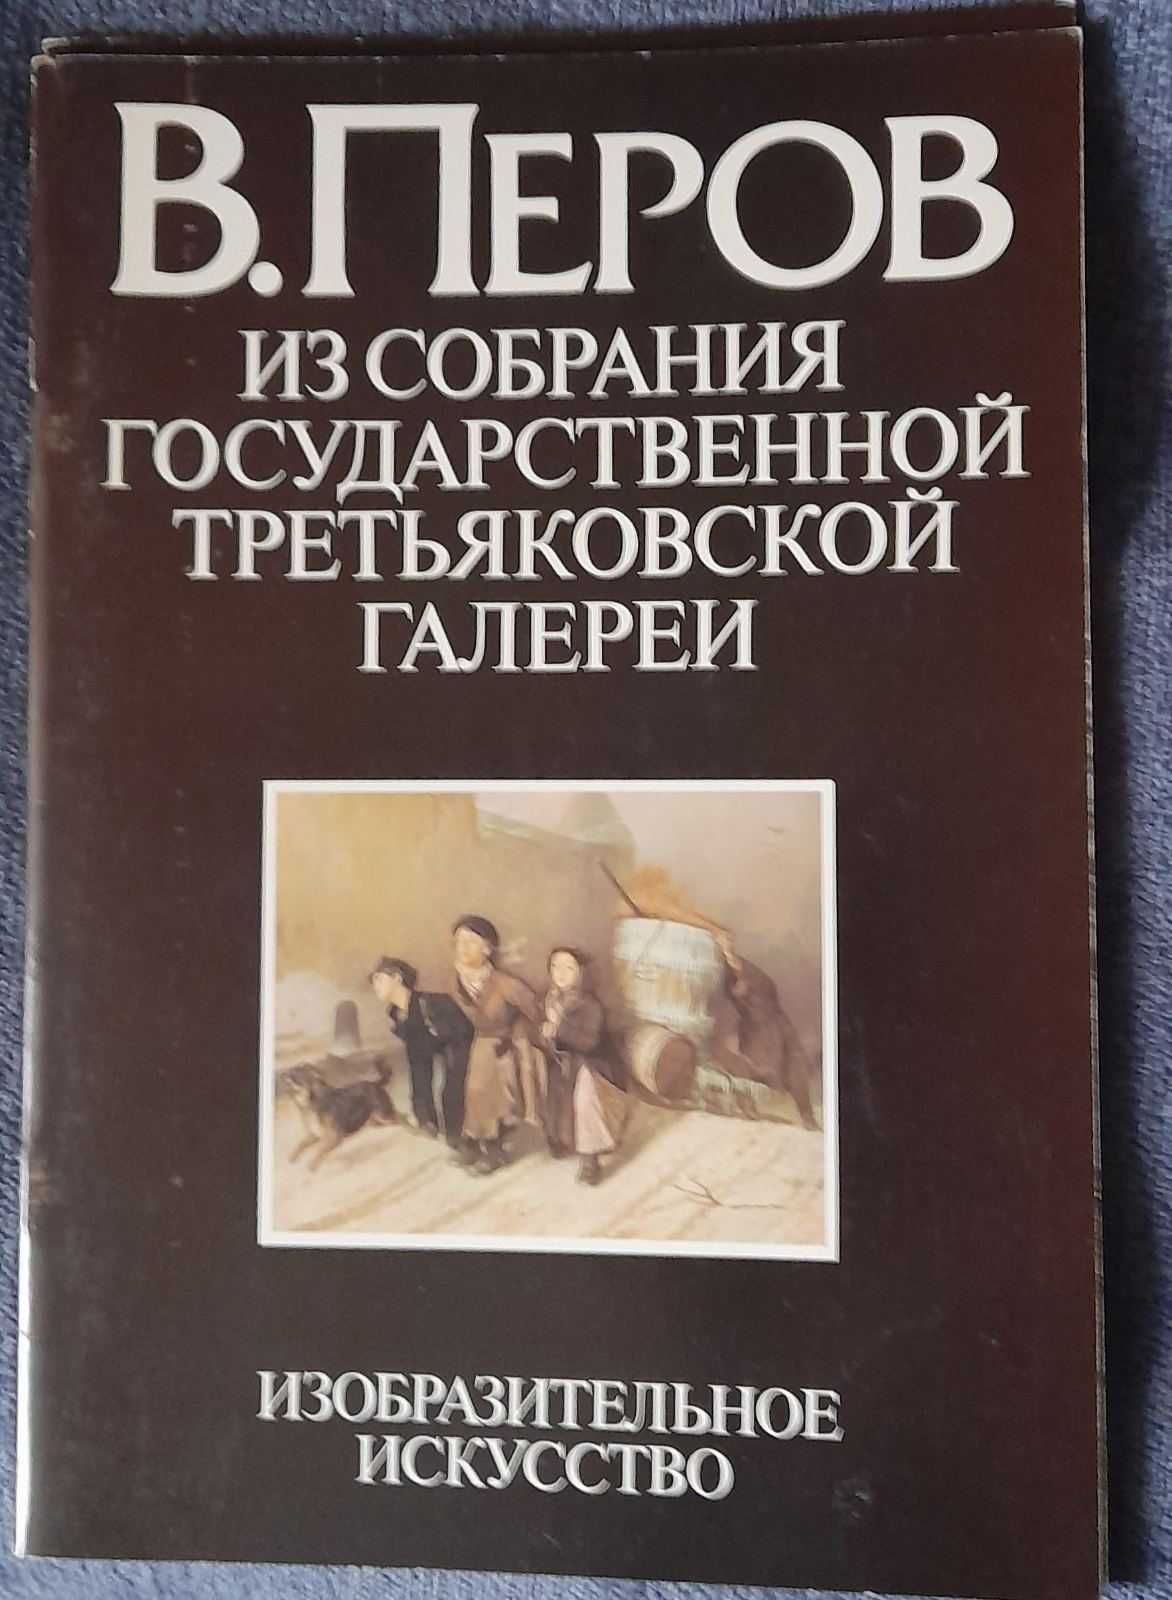 Альбом В.Перов из собрания гос. Третьяковской галереи. 1983 год